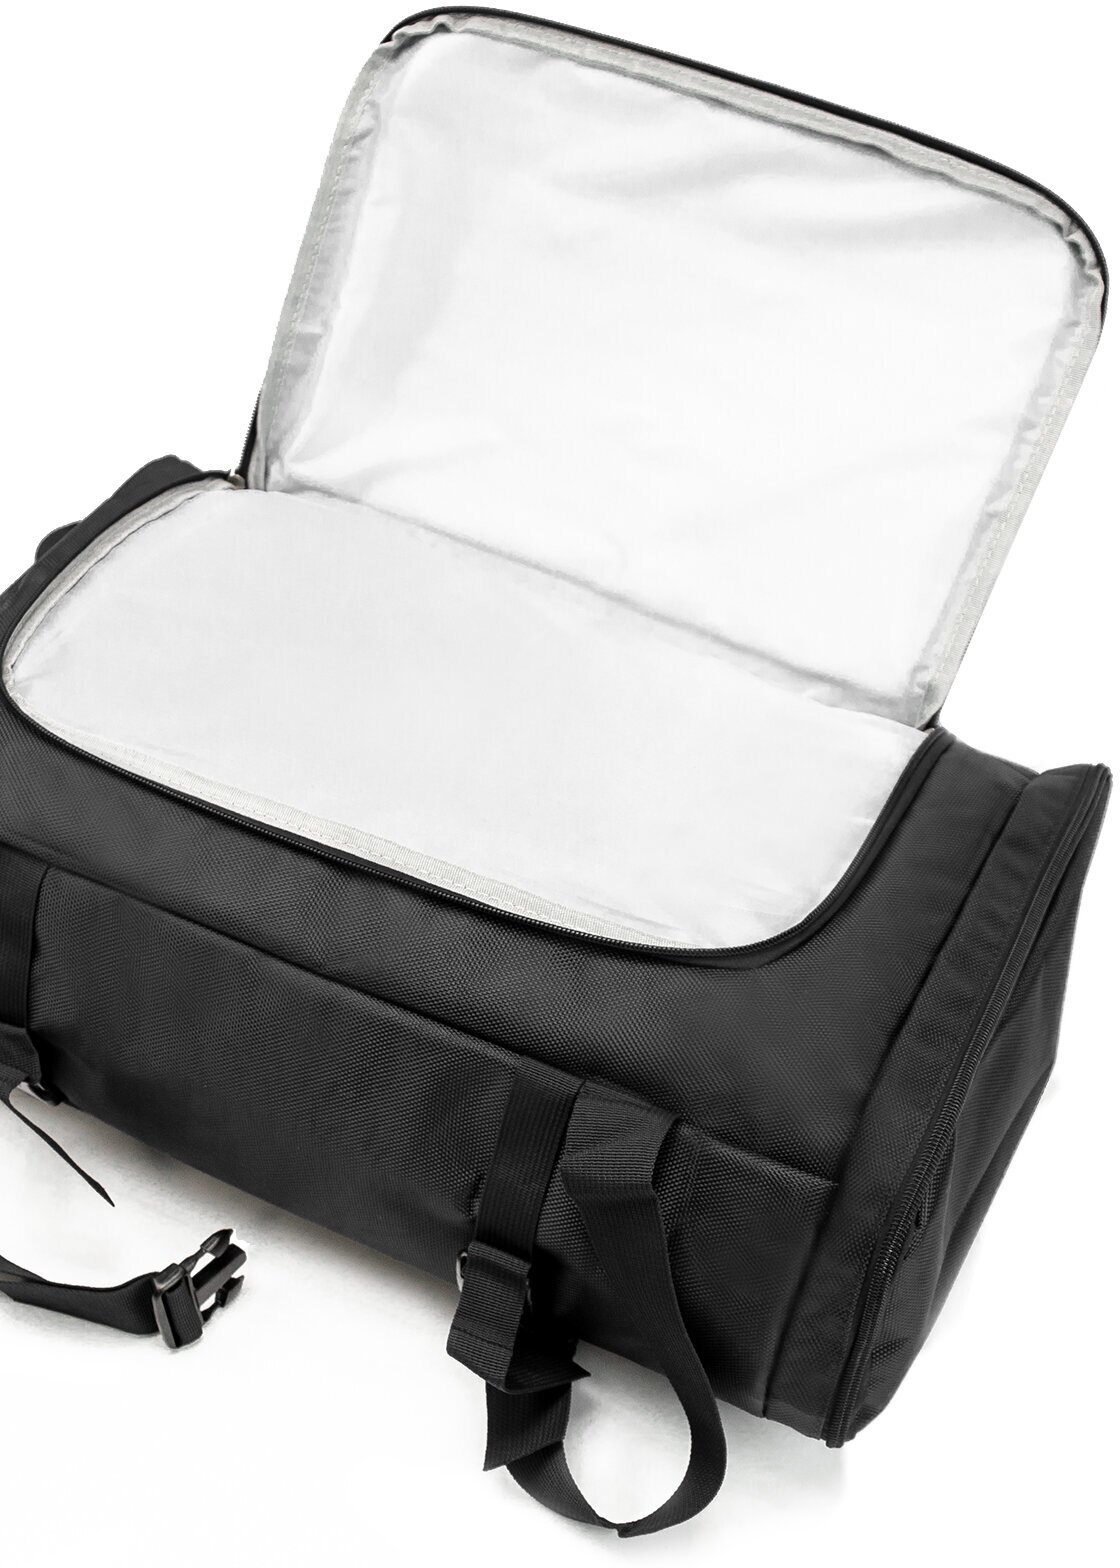 Рюкзак-спортивная сумка (22,5 л, черная) UrbanStorm трансформер большой размер для фитнеса, отдыха \ школьный для мальчиков, девочек - фотография № 5